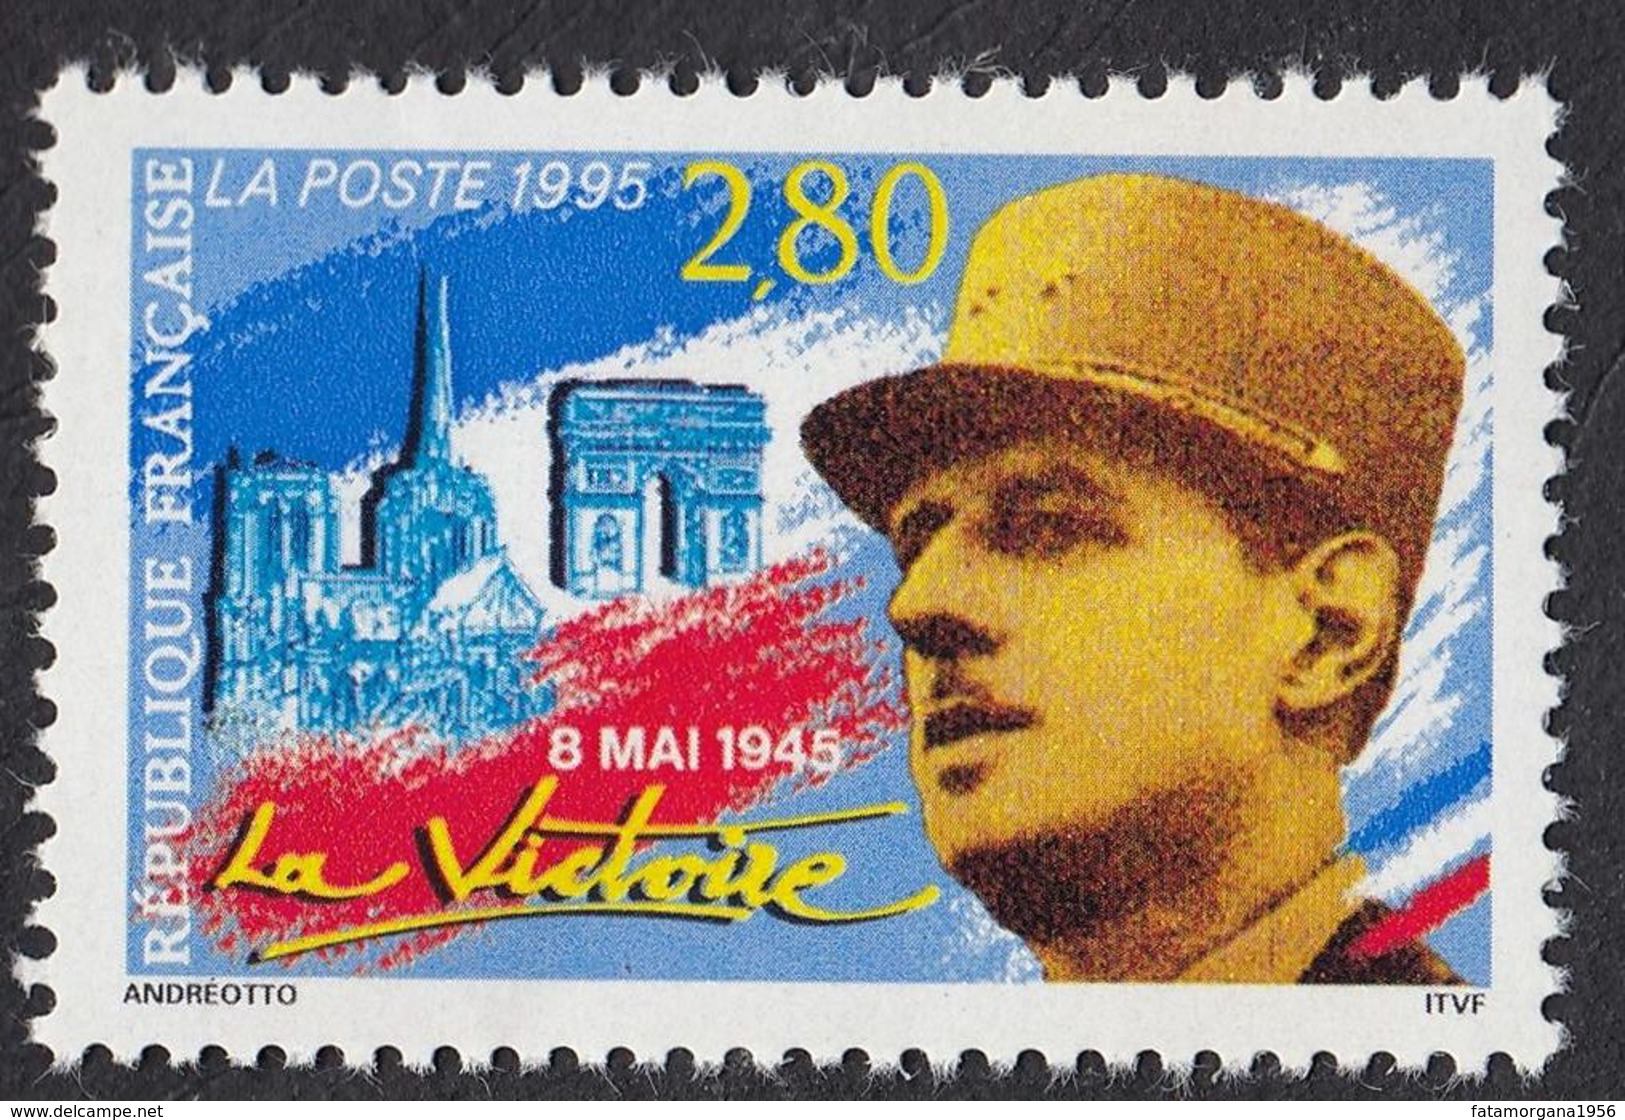 FRANCE - 1995 - Yvert 2944, 8 Mai 1945, La Victoire, 2,80 F, Neuf, Parfait. - Nuovi